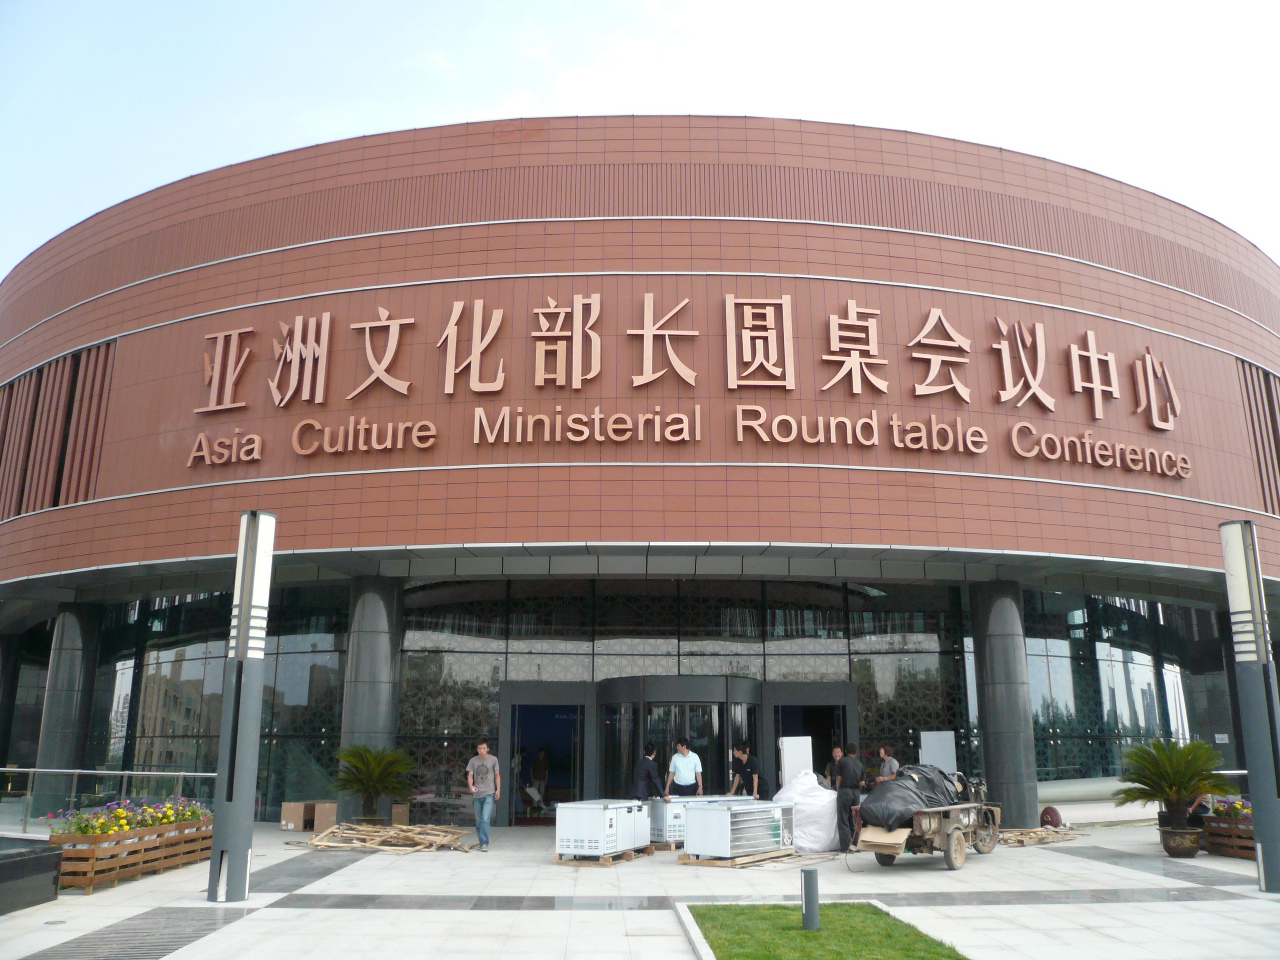 【陶板案例】亚洲文化部长圆桌会议中心